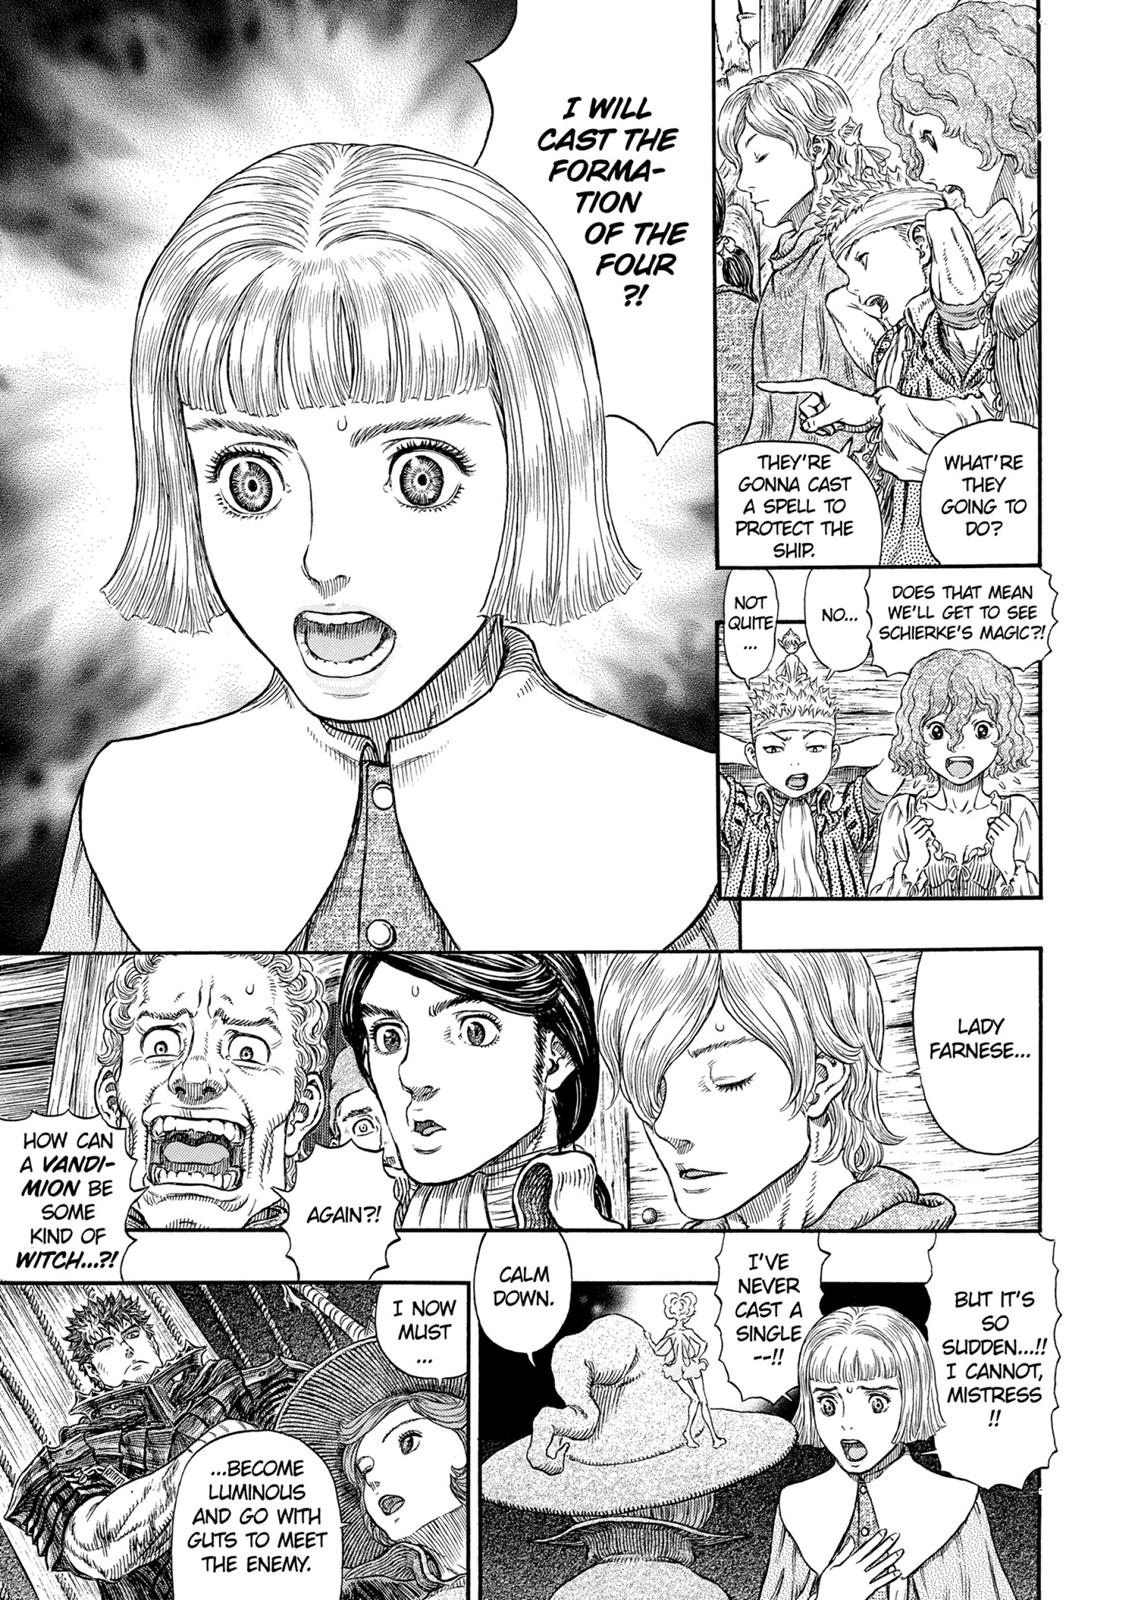 Berserk Manga Chapter 317 image 20